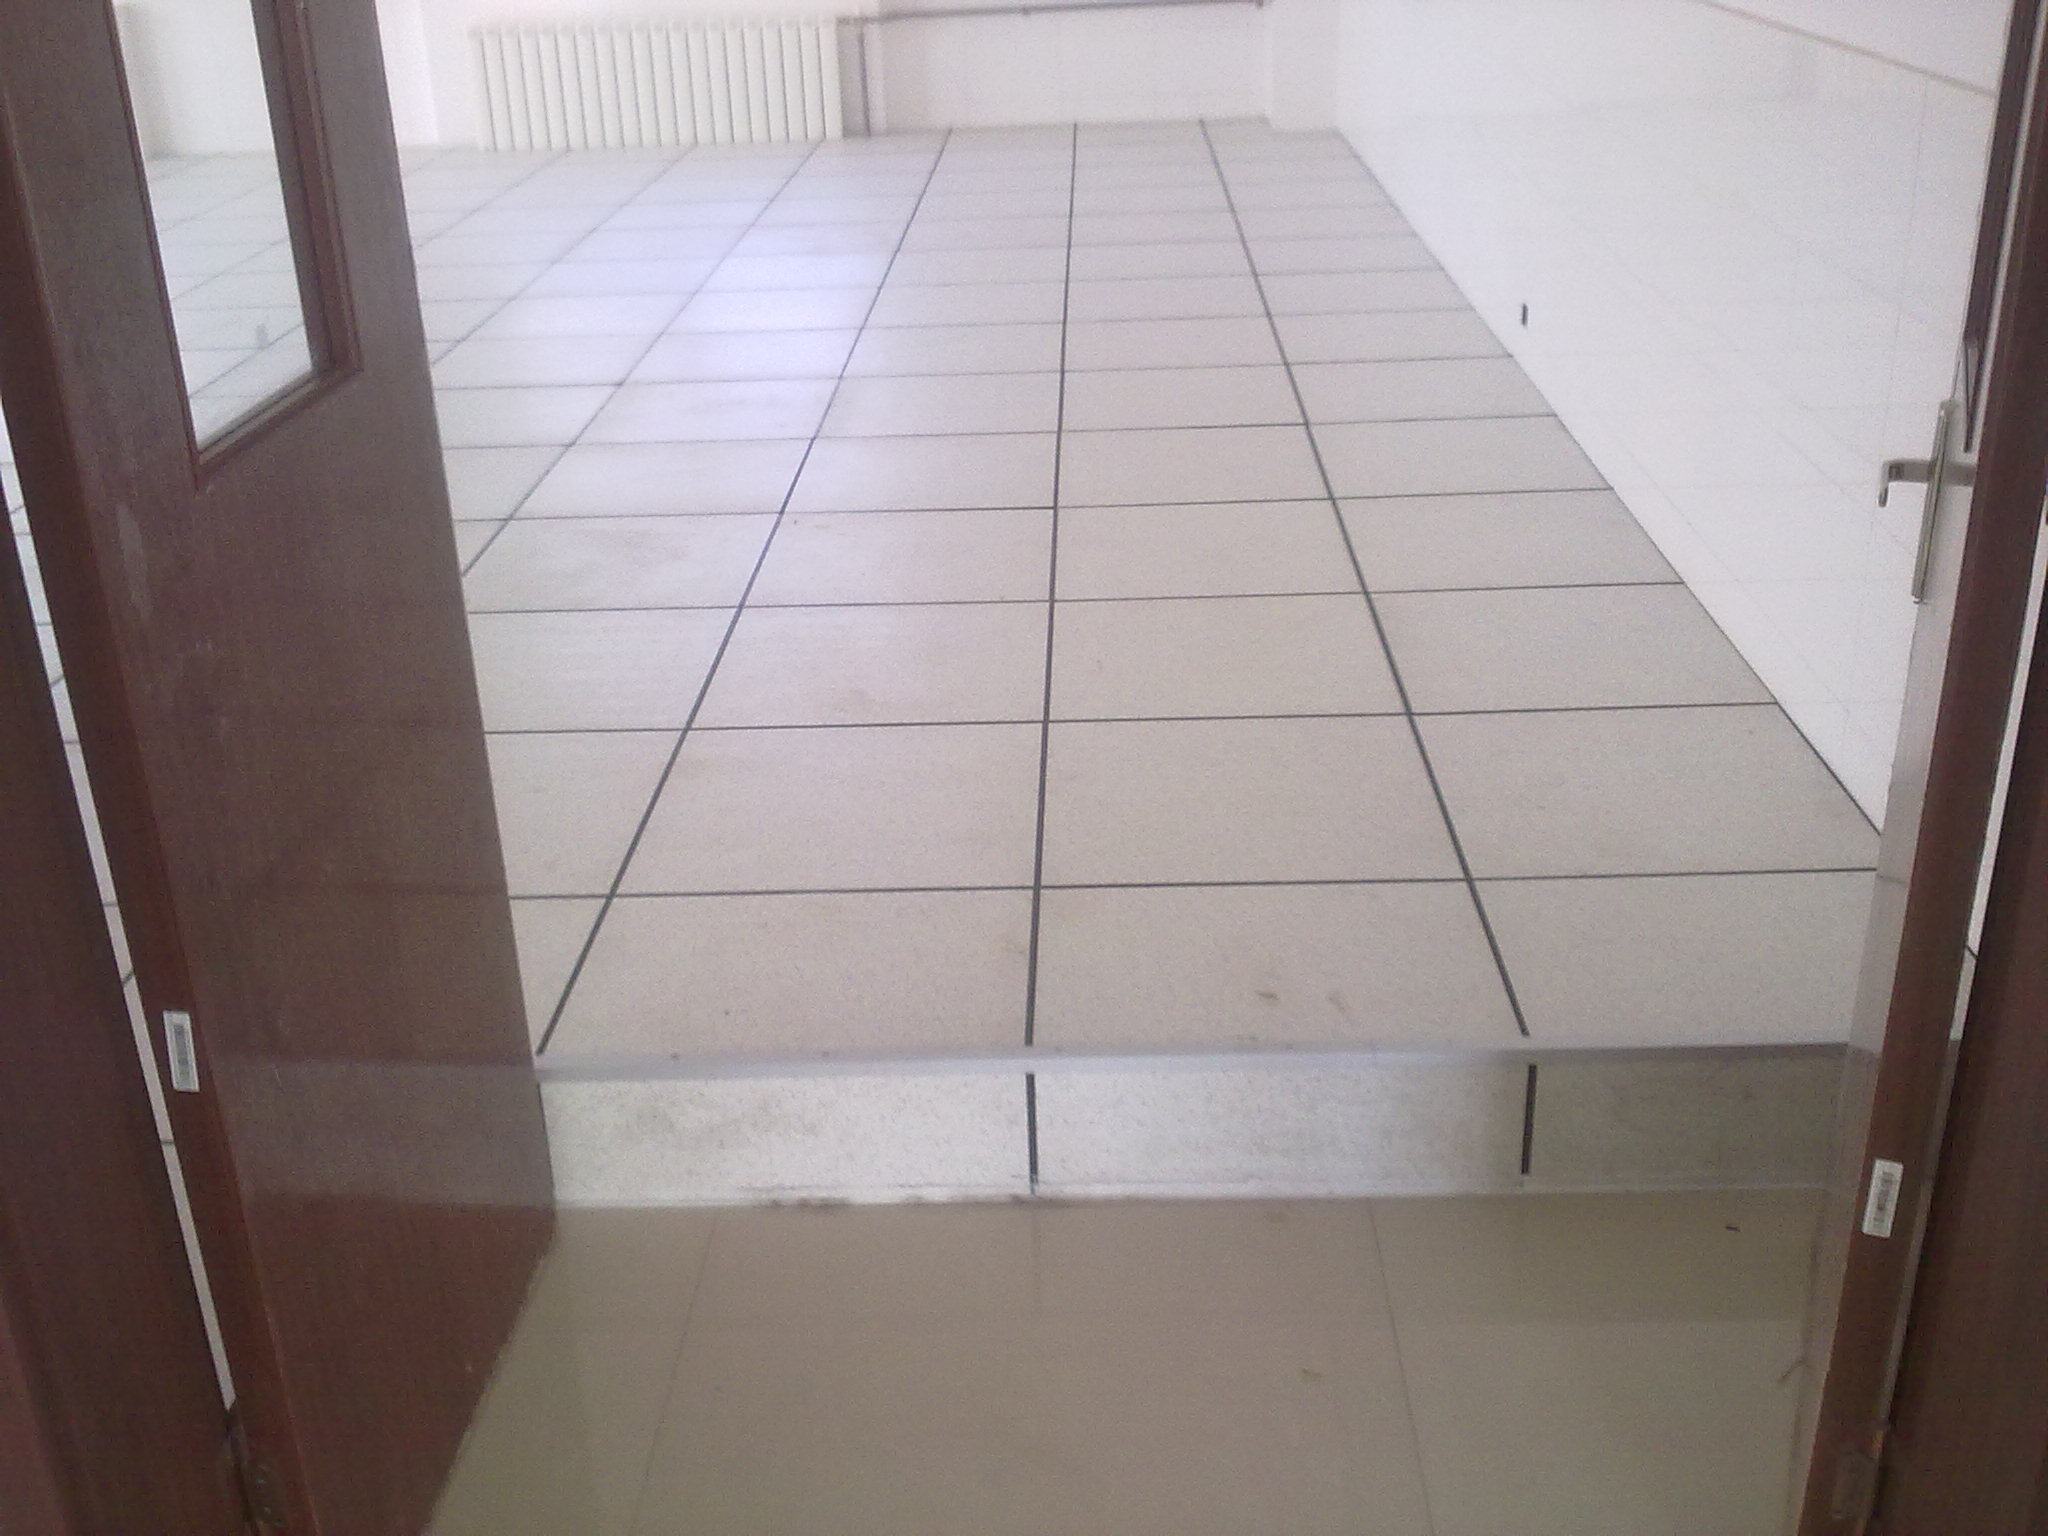 [架空地板]市場上銷售普遍的防靜電地板產品說明！